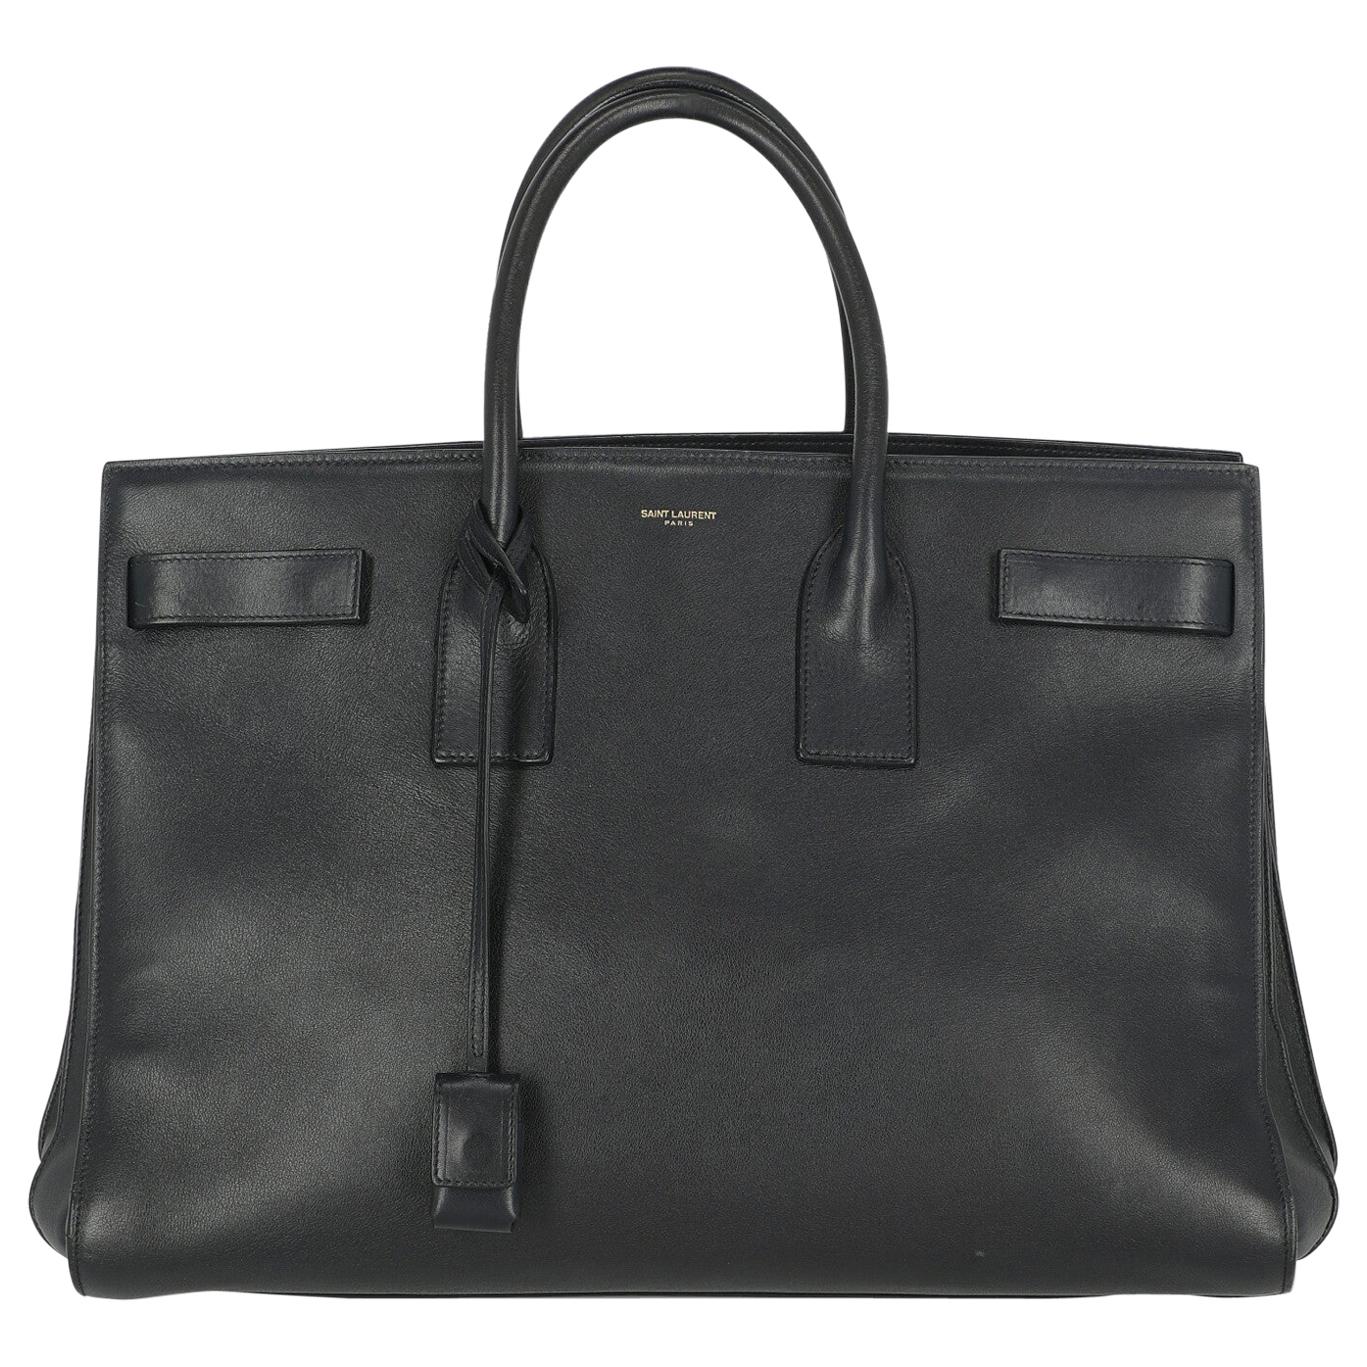 Saint Laurent Woman Handbag Sac De Jour Navy Leather For Sale